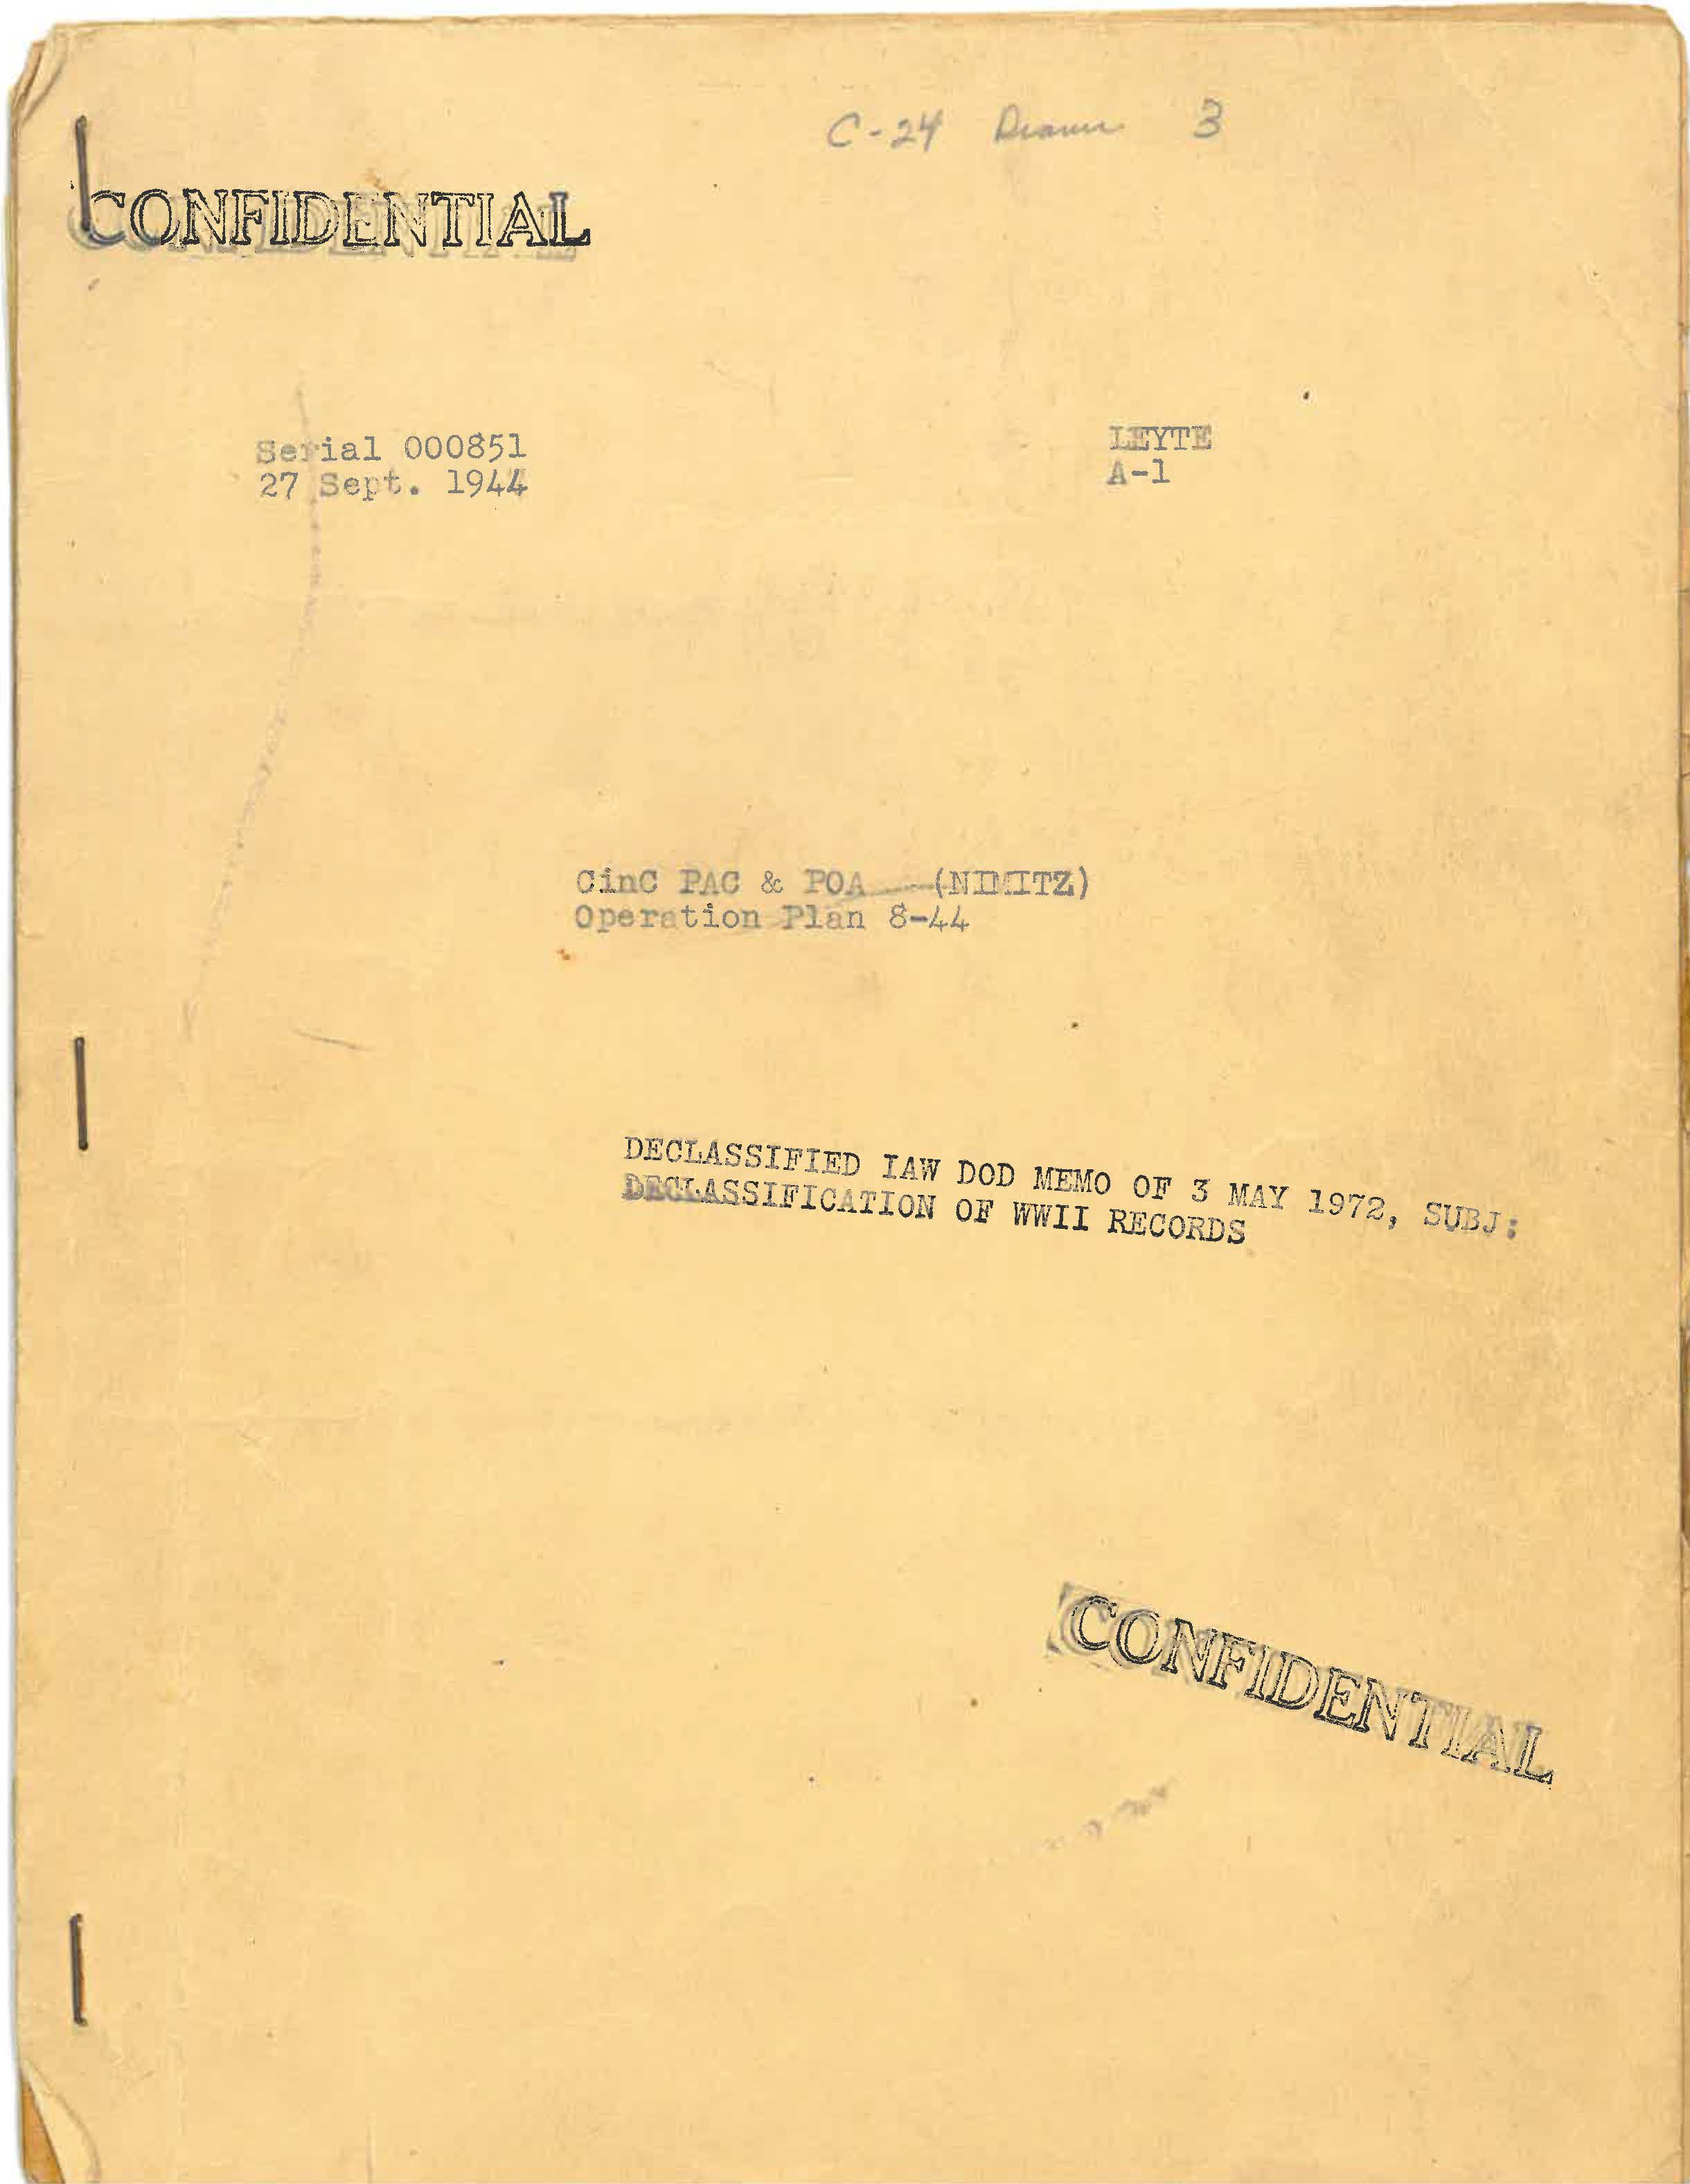 CINCPAC/POA (Nimitz) Operation, Plan 8-44